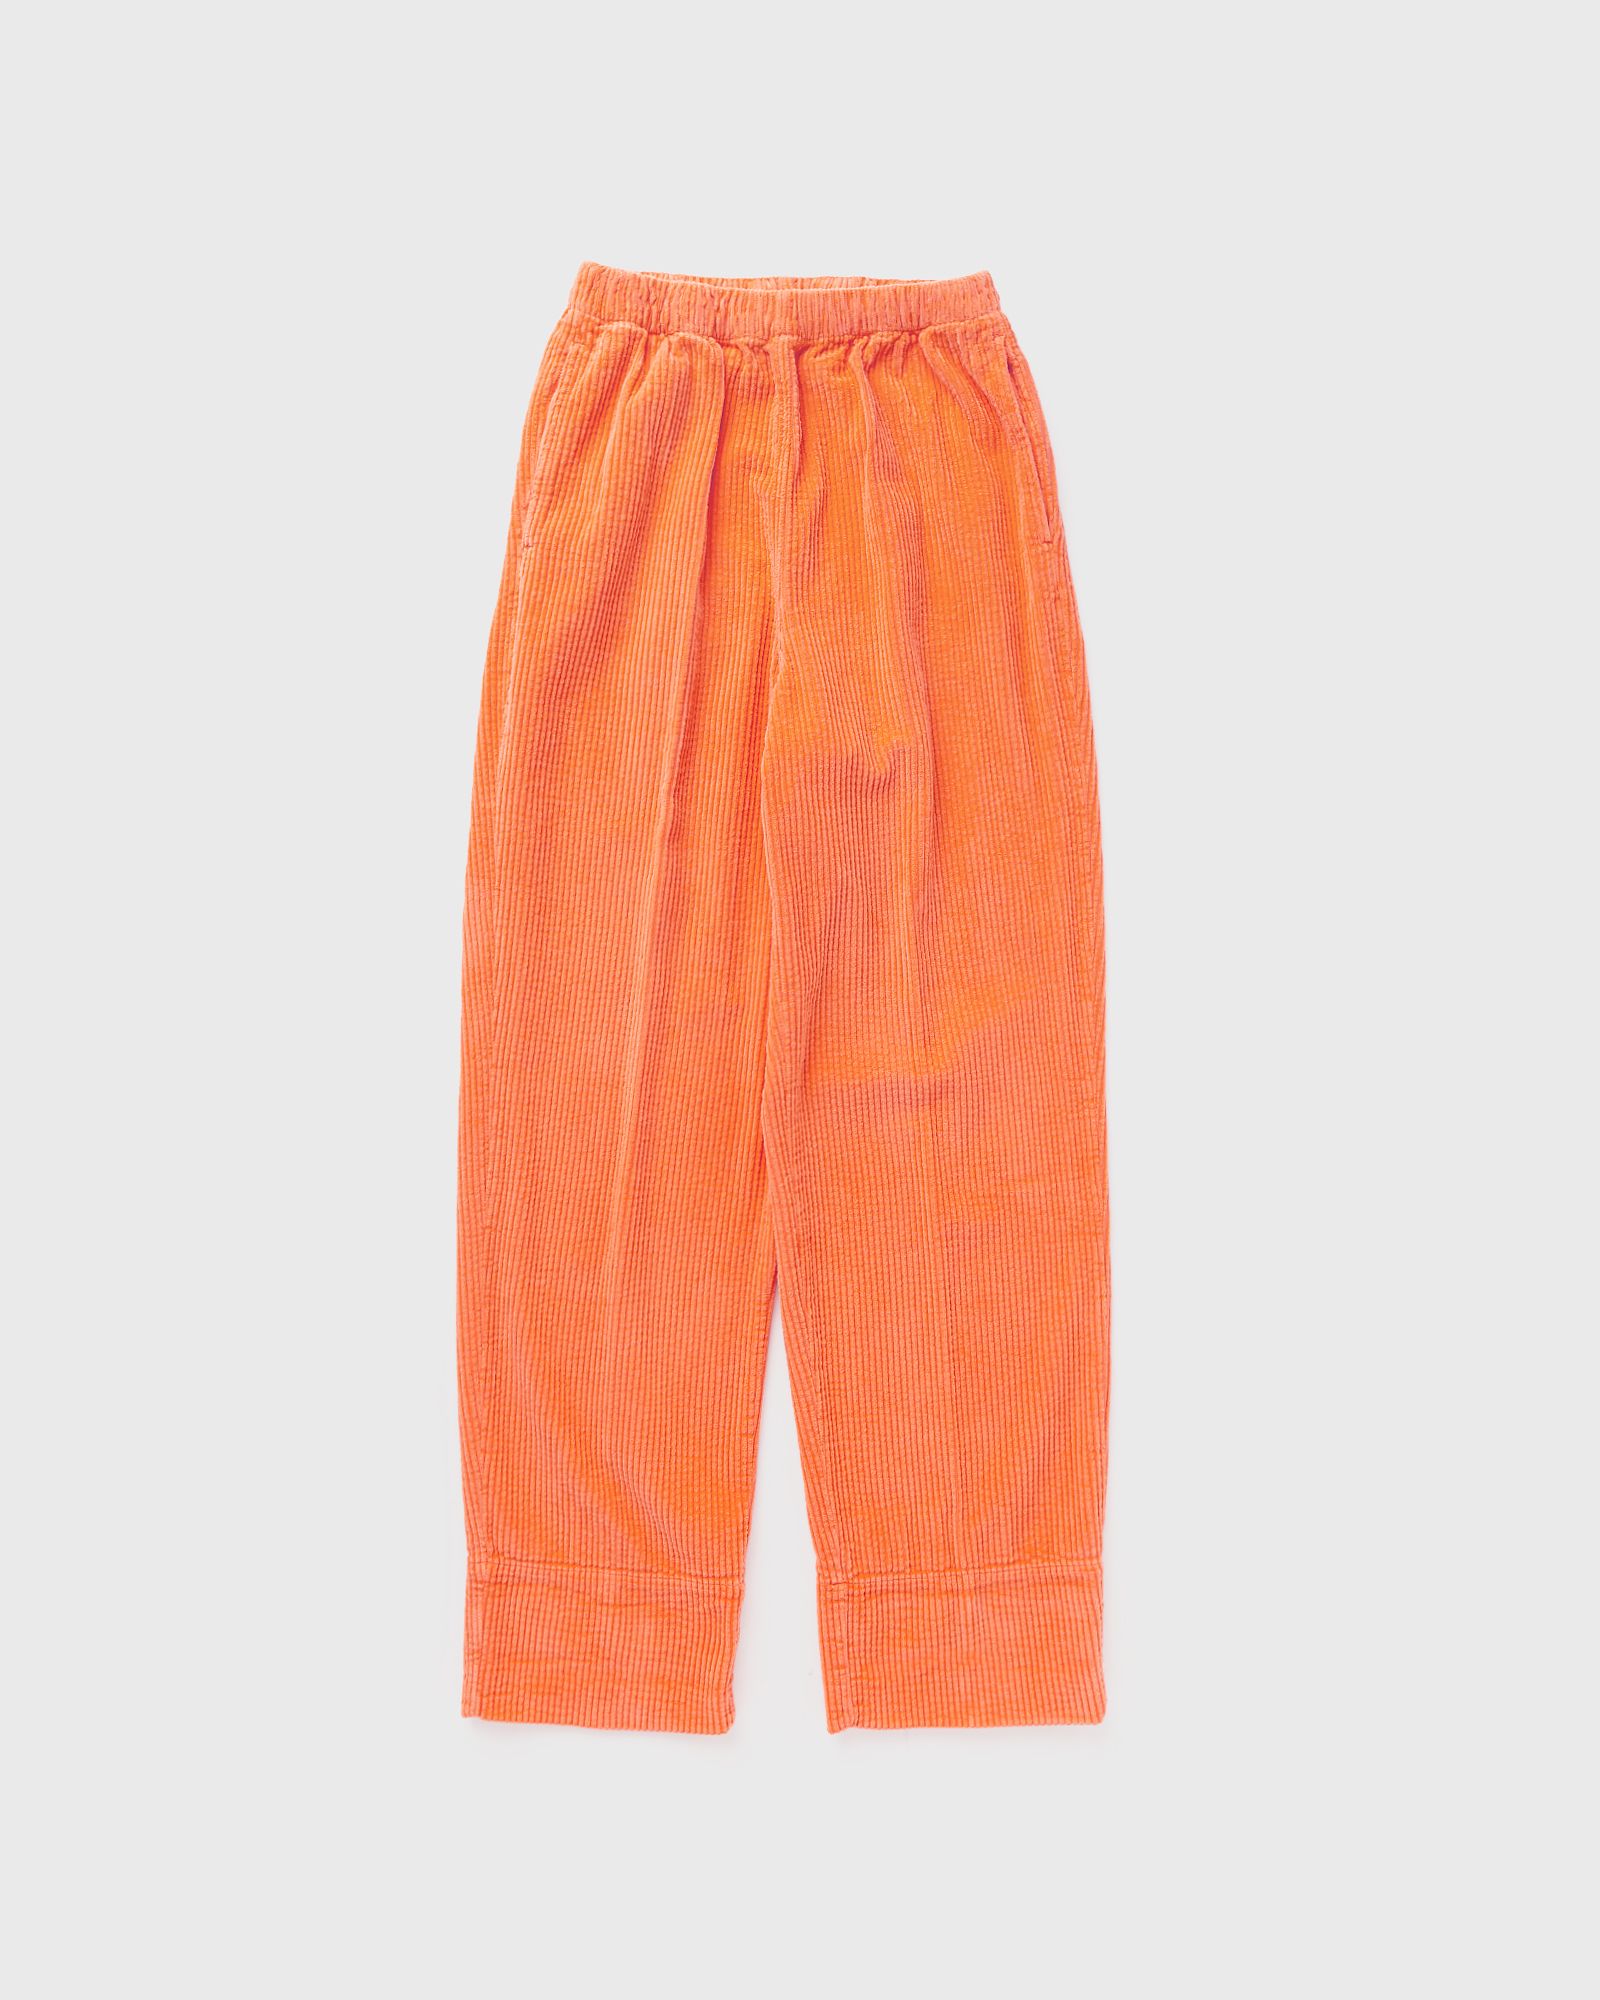 American Vintage - pado pant women casual pants orange in größe:xs